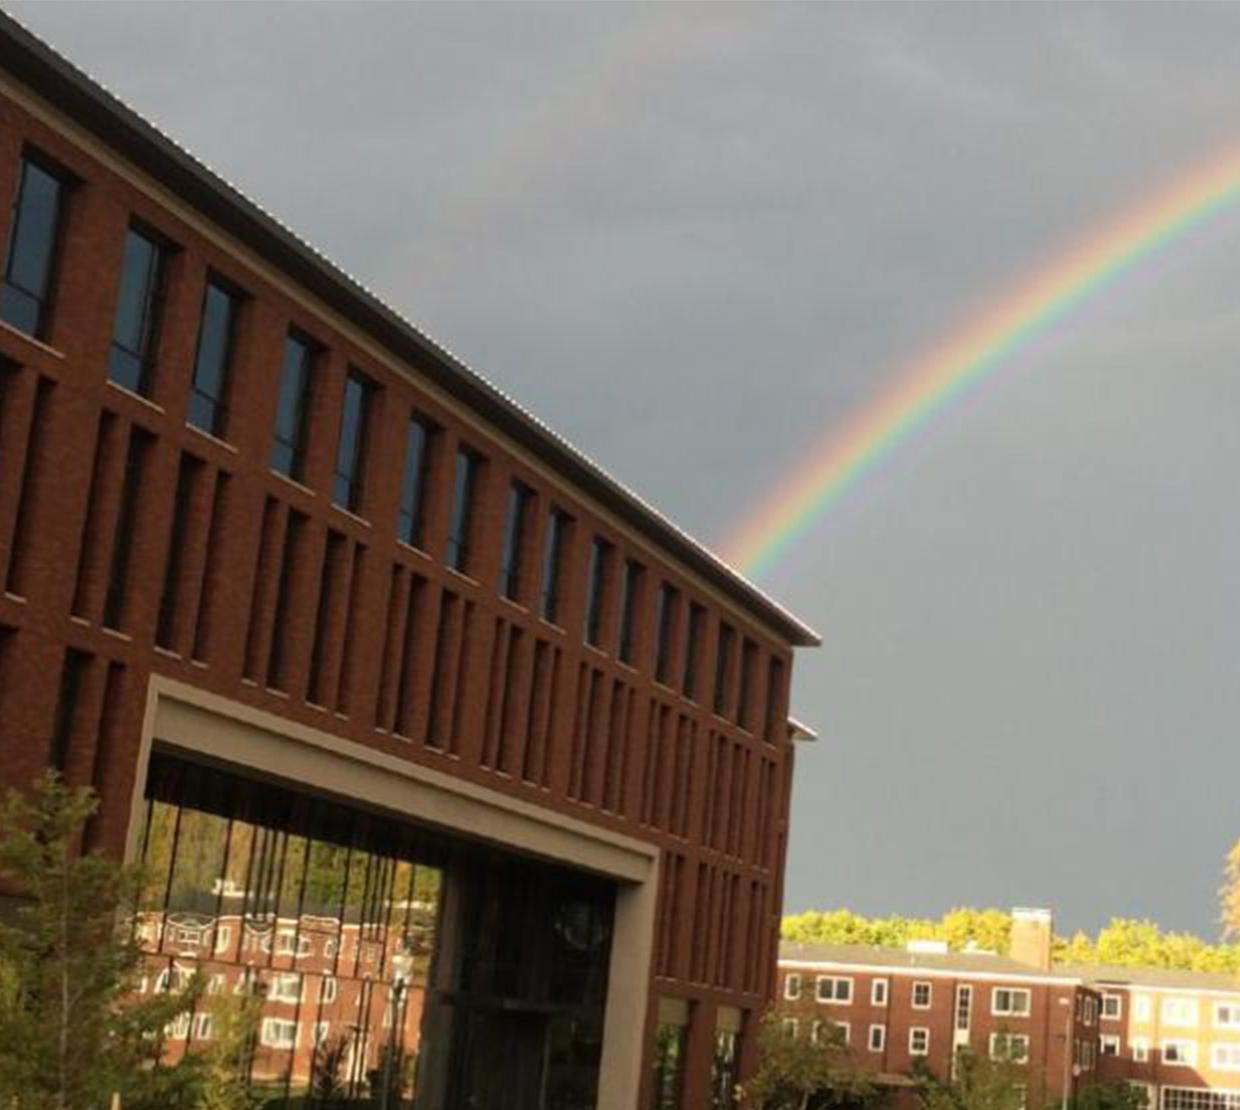 A rainbow peering behind Austin Hall.